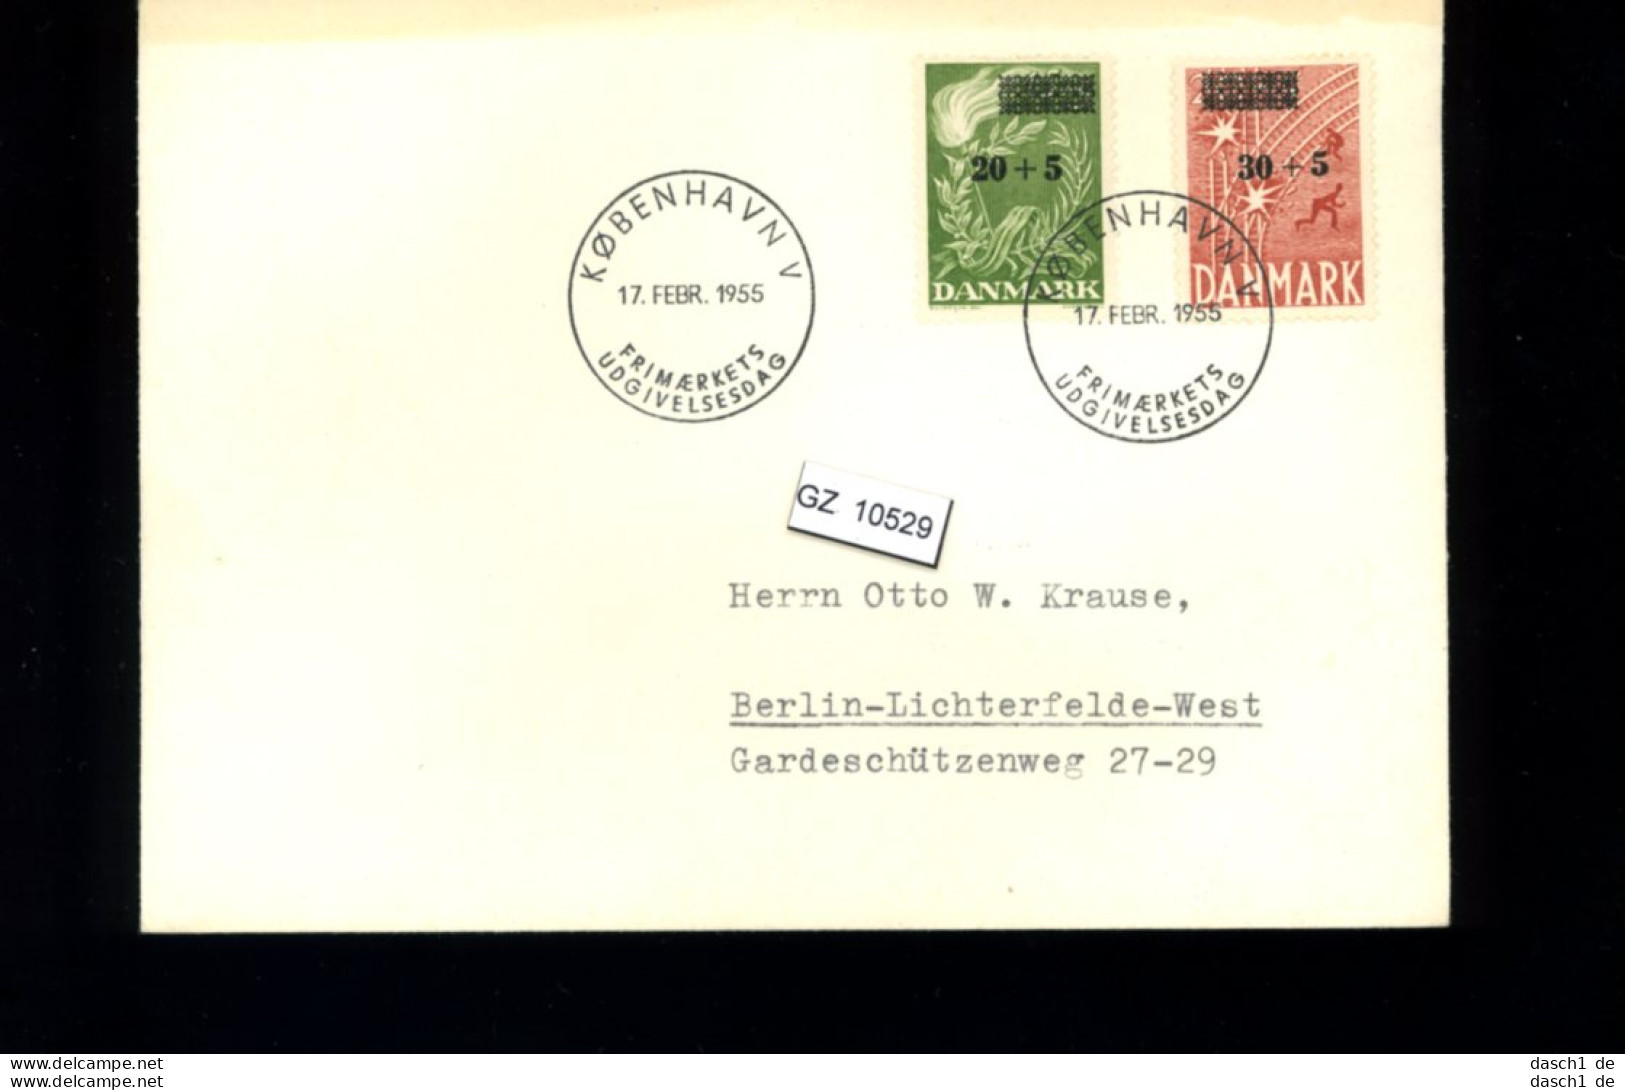 Dänemark, 11 Lose u.a. Brief von 1928